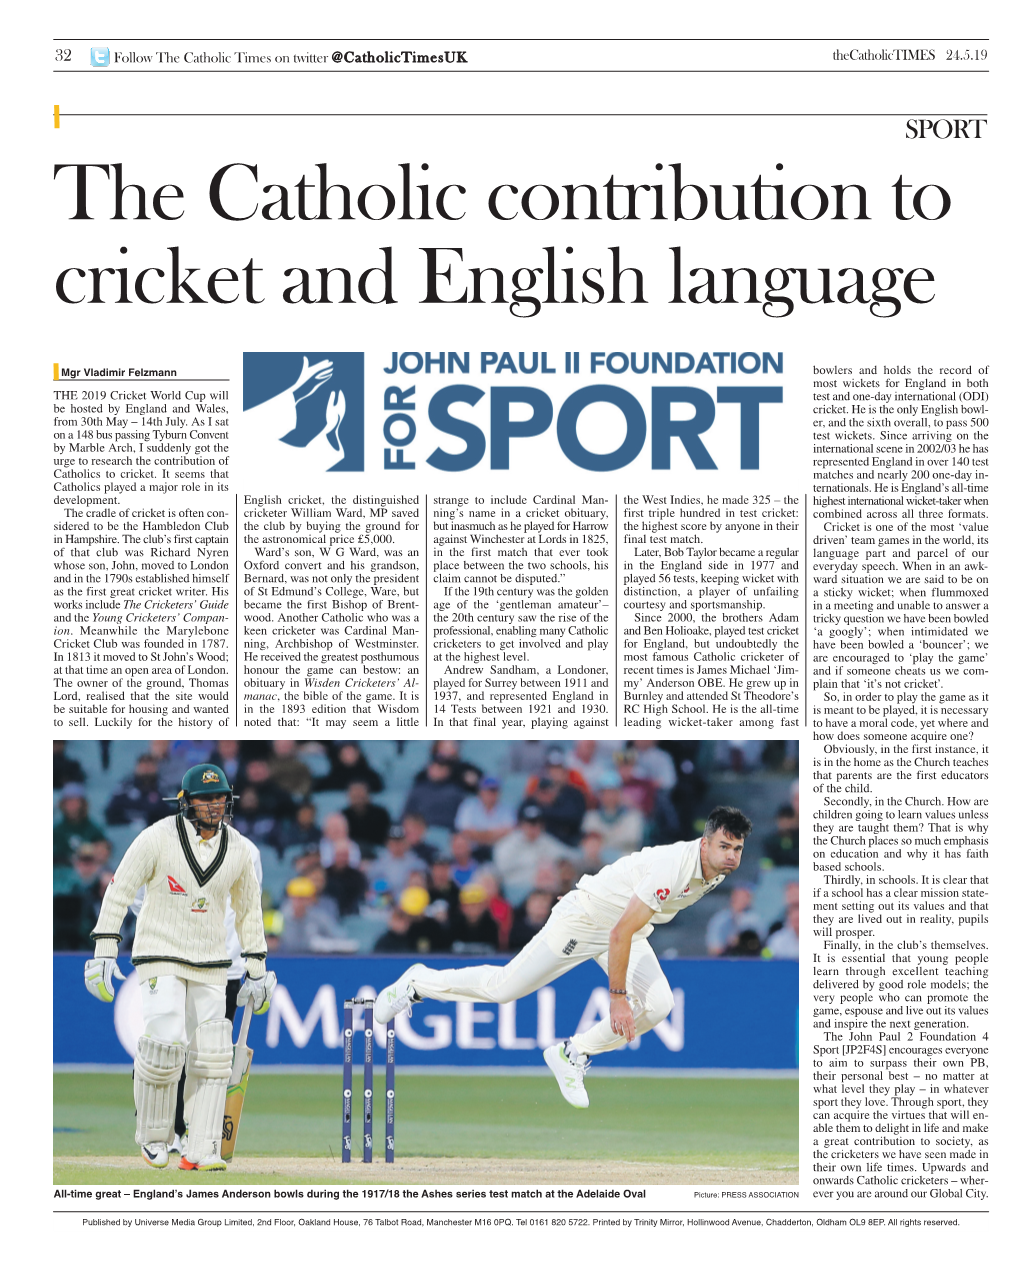 The Catholic Contribution to Cricket and English Language